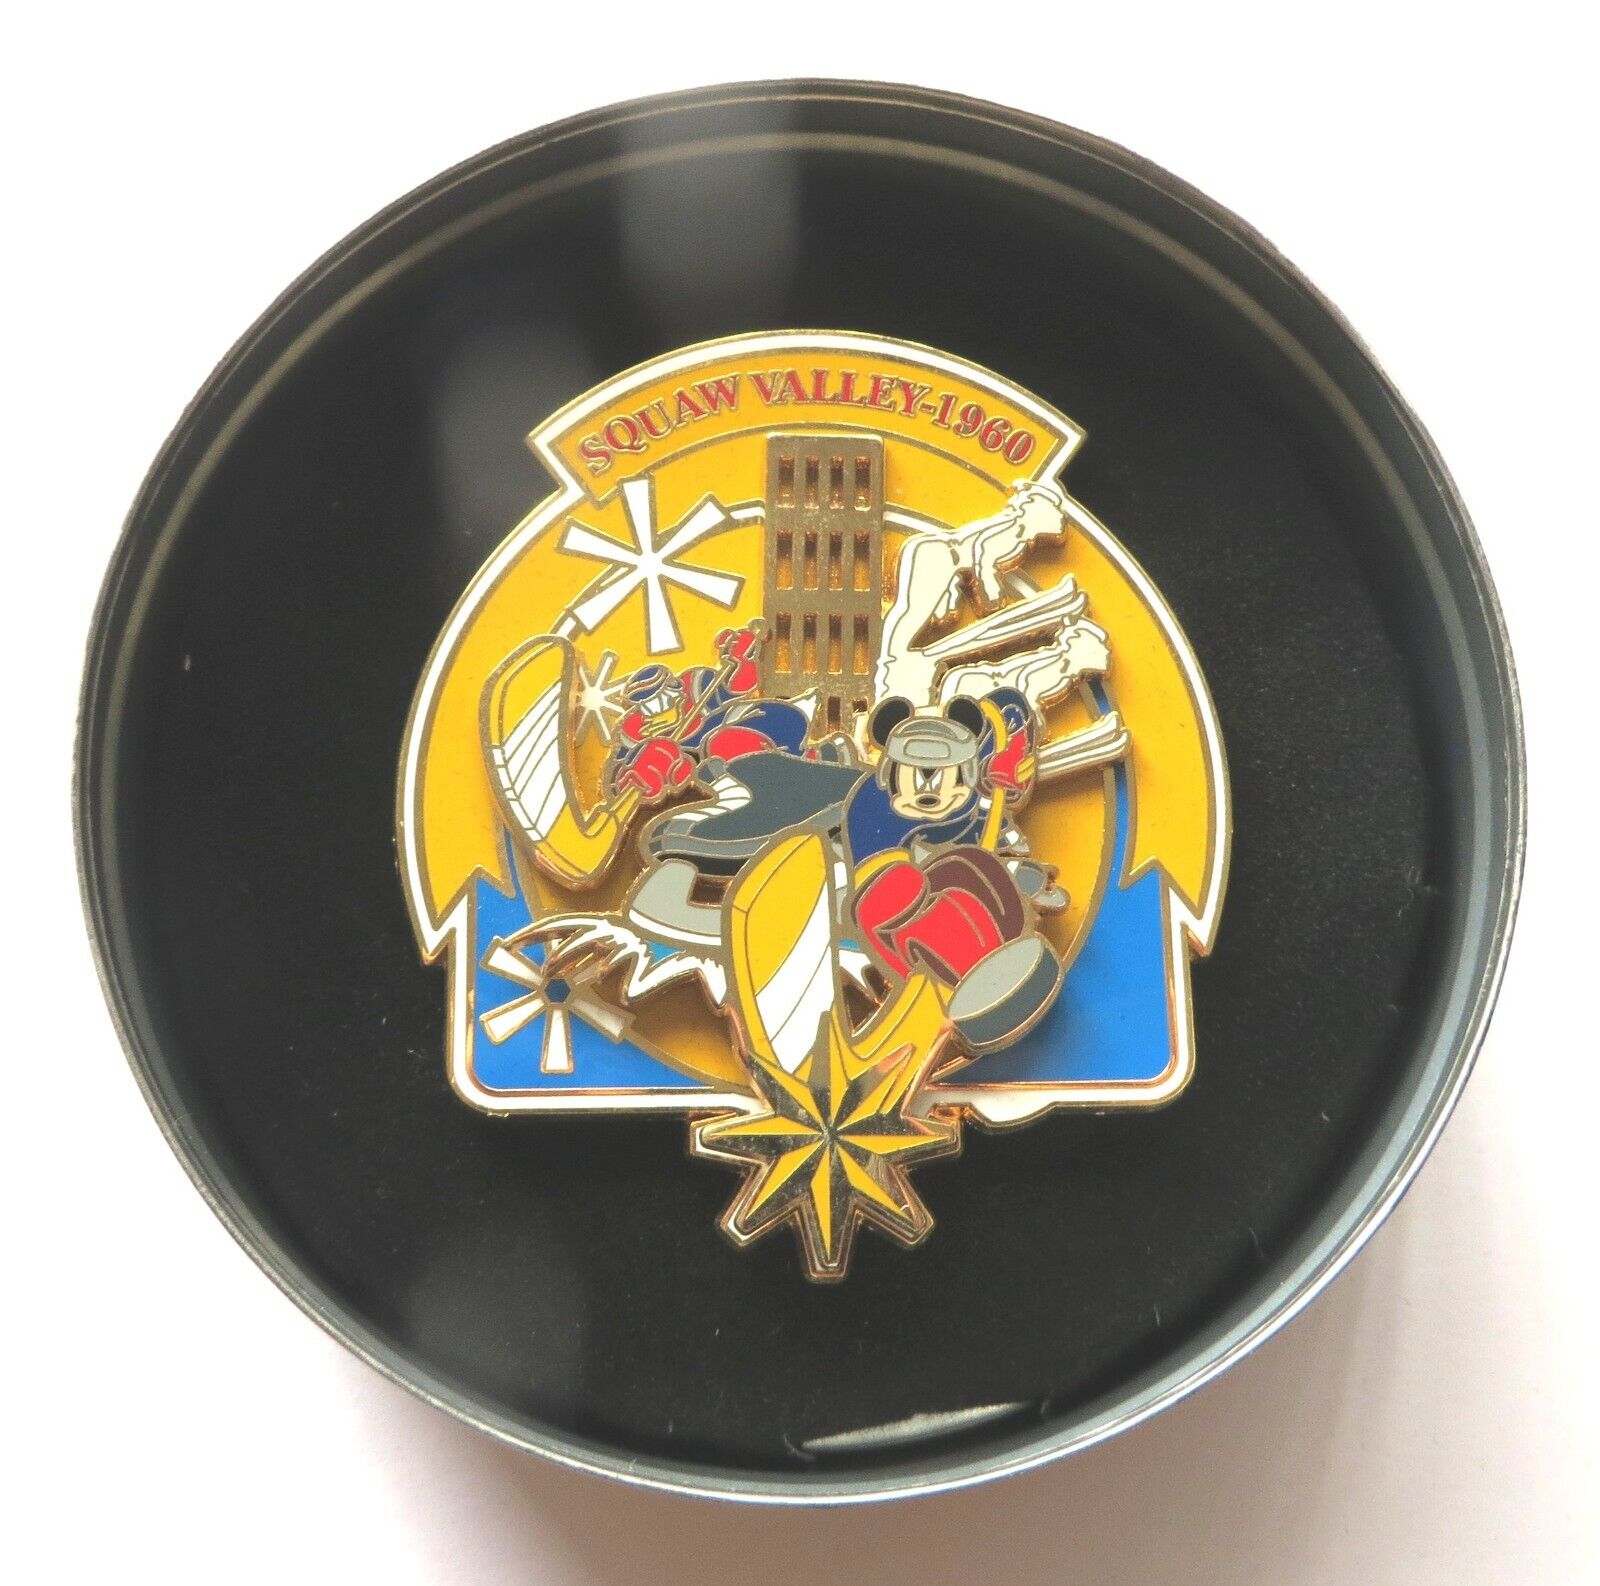 2004 Olympics Jumbo Disney pin: Squaw Valley 1960 Mickey & Donald Hockey, LE 750